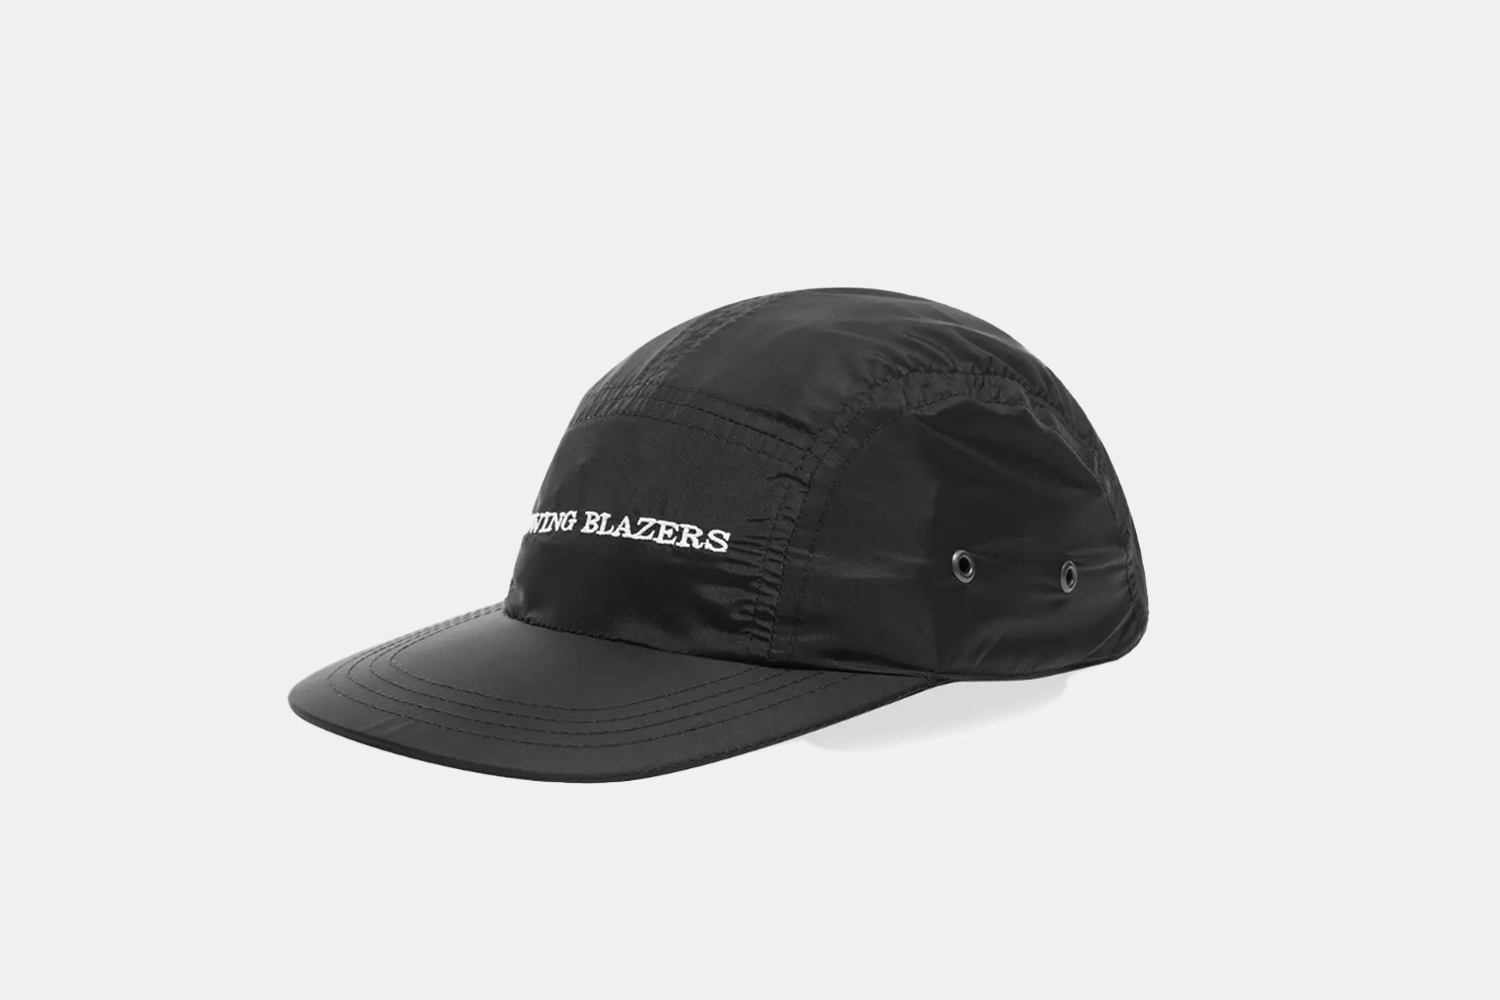 a black panel cap